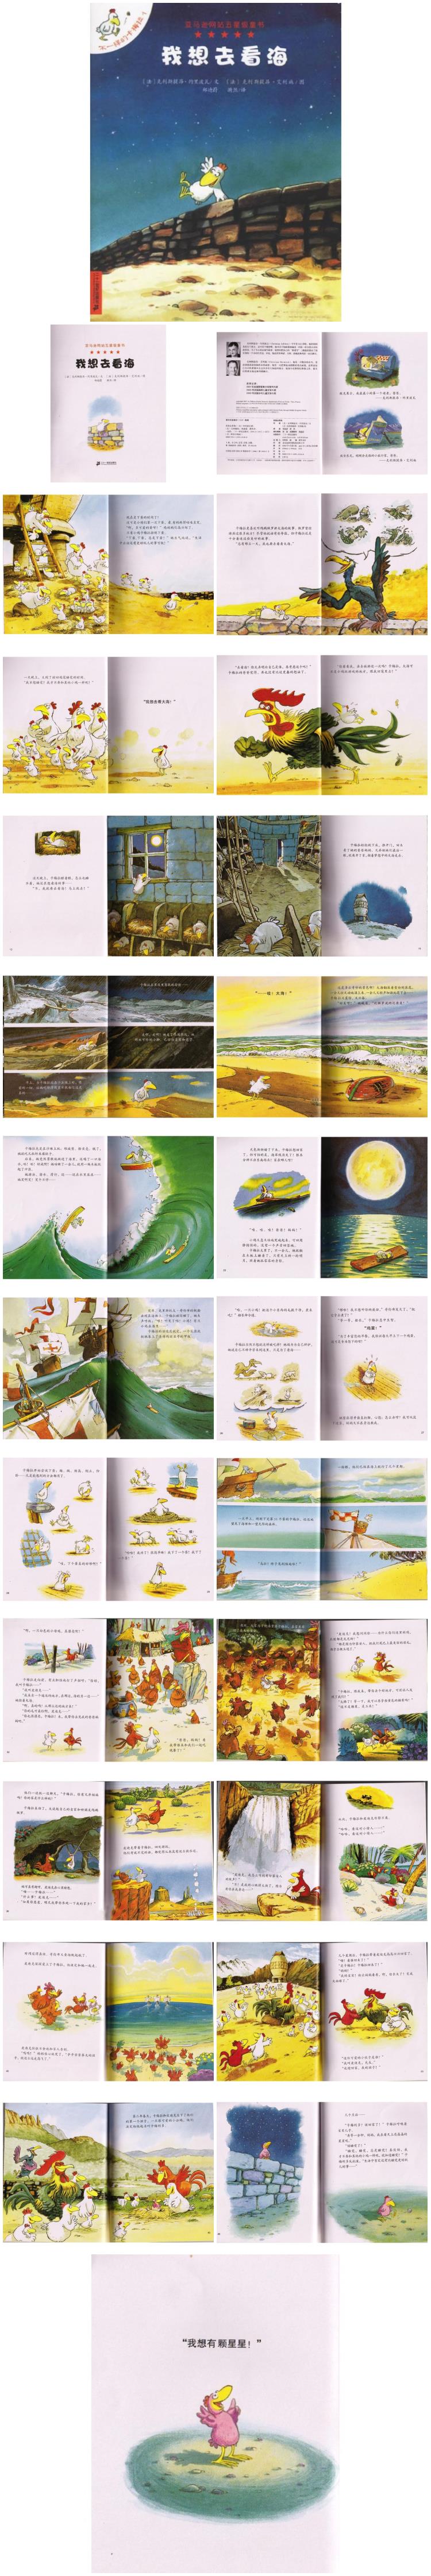 《我想去看海》童话绘本儿童故事PPT